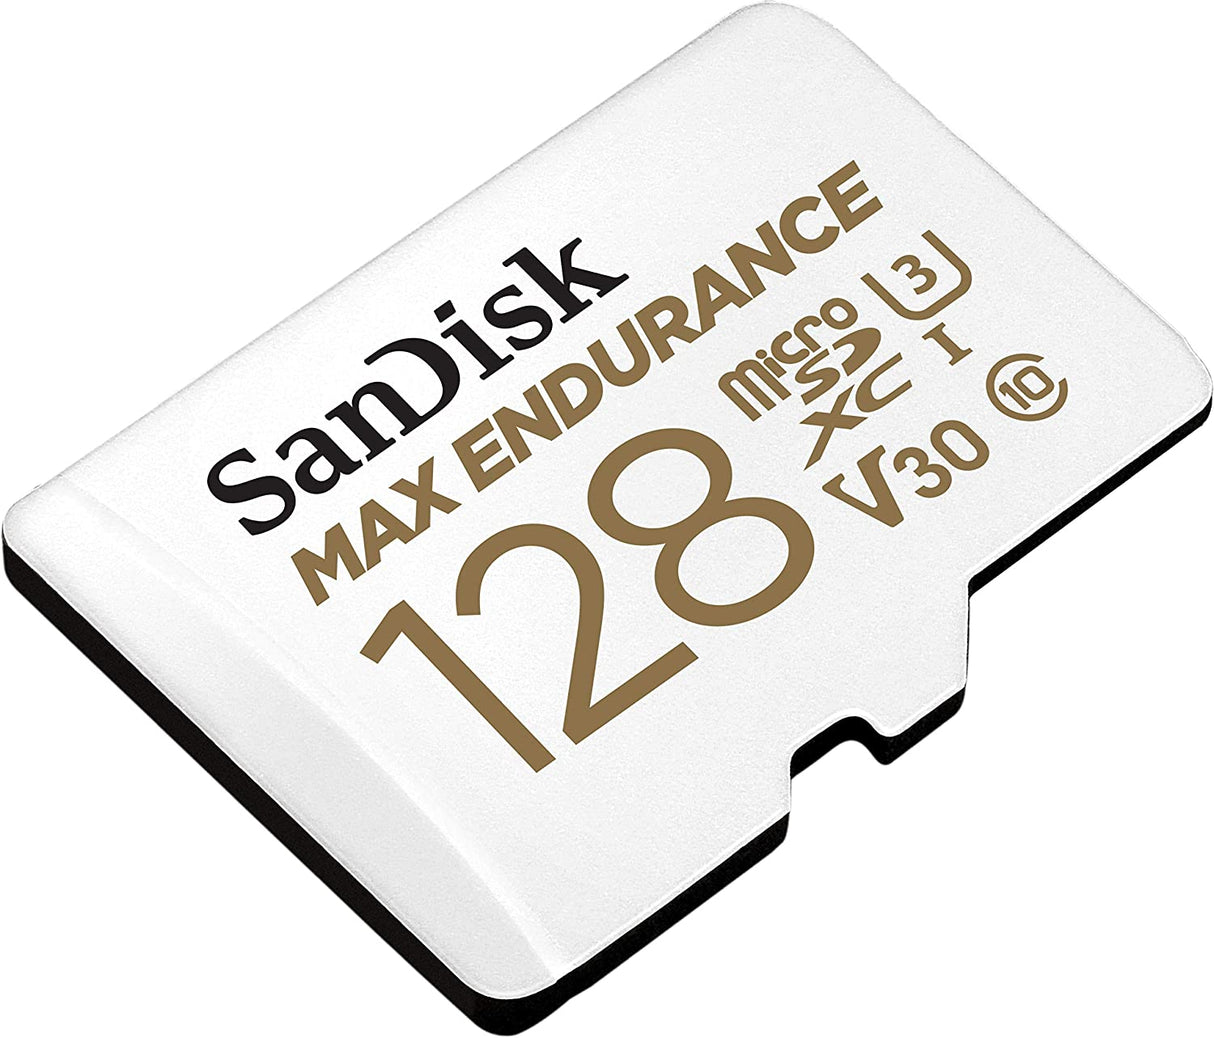 بطاقة Sandisk Max Endurance بسرعة 100/40 ميجابايت/ثانية وسرعة 15000 ساعة مع محول Micro SDXC